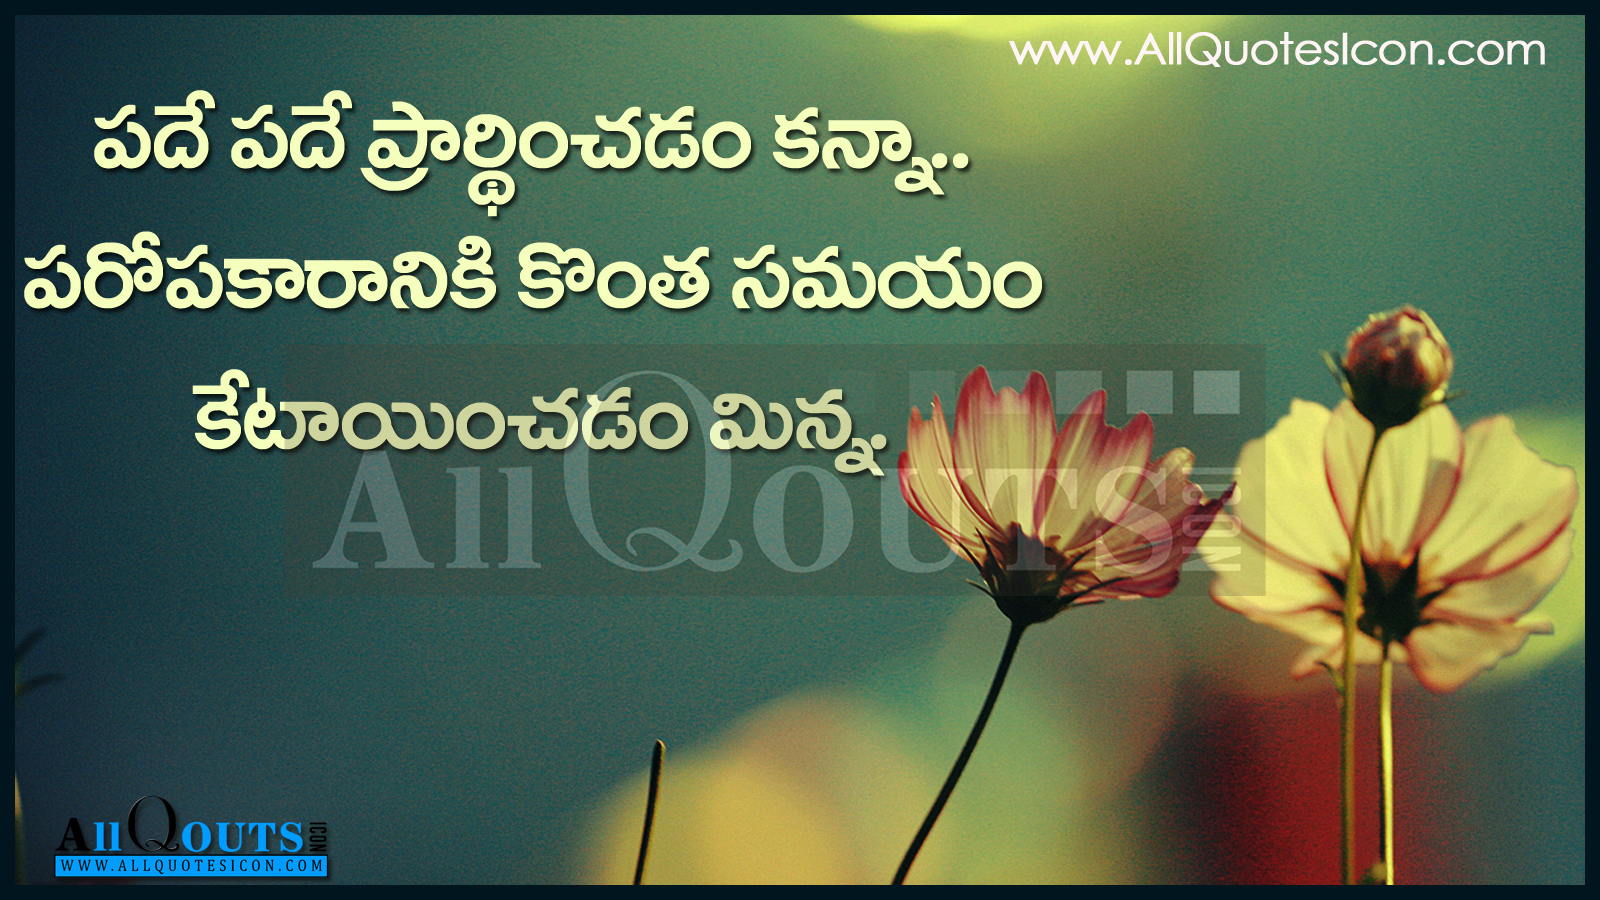 Telugu Quotes Telugu Good Night Quotations Telugu Friendship Quotes